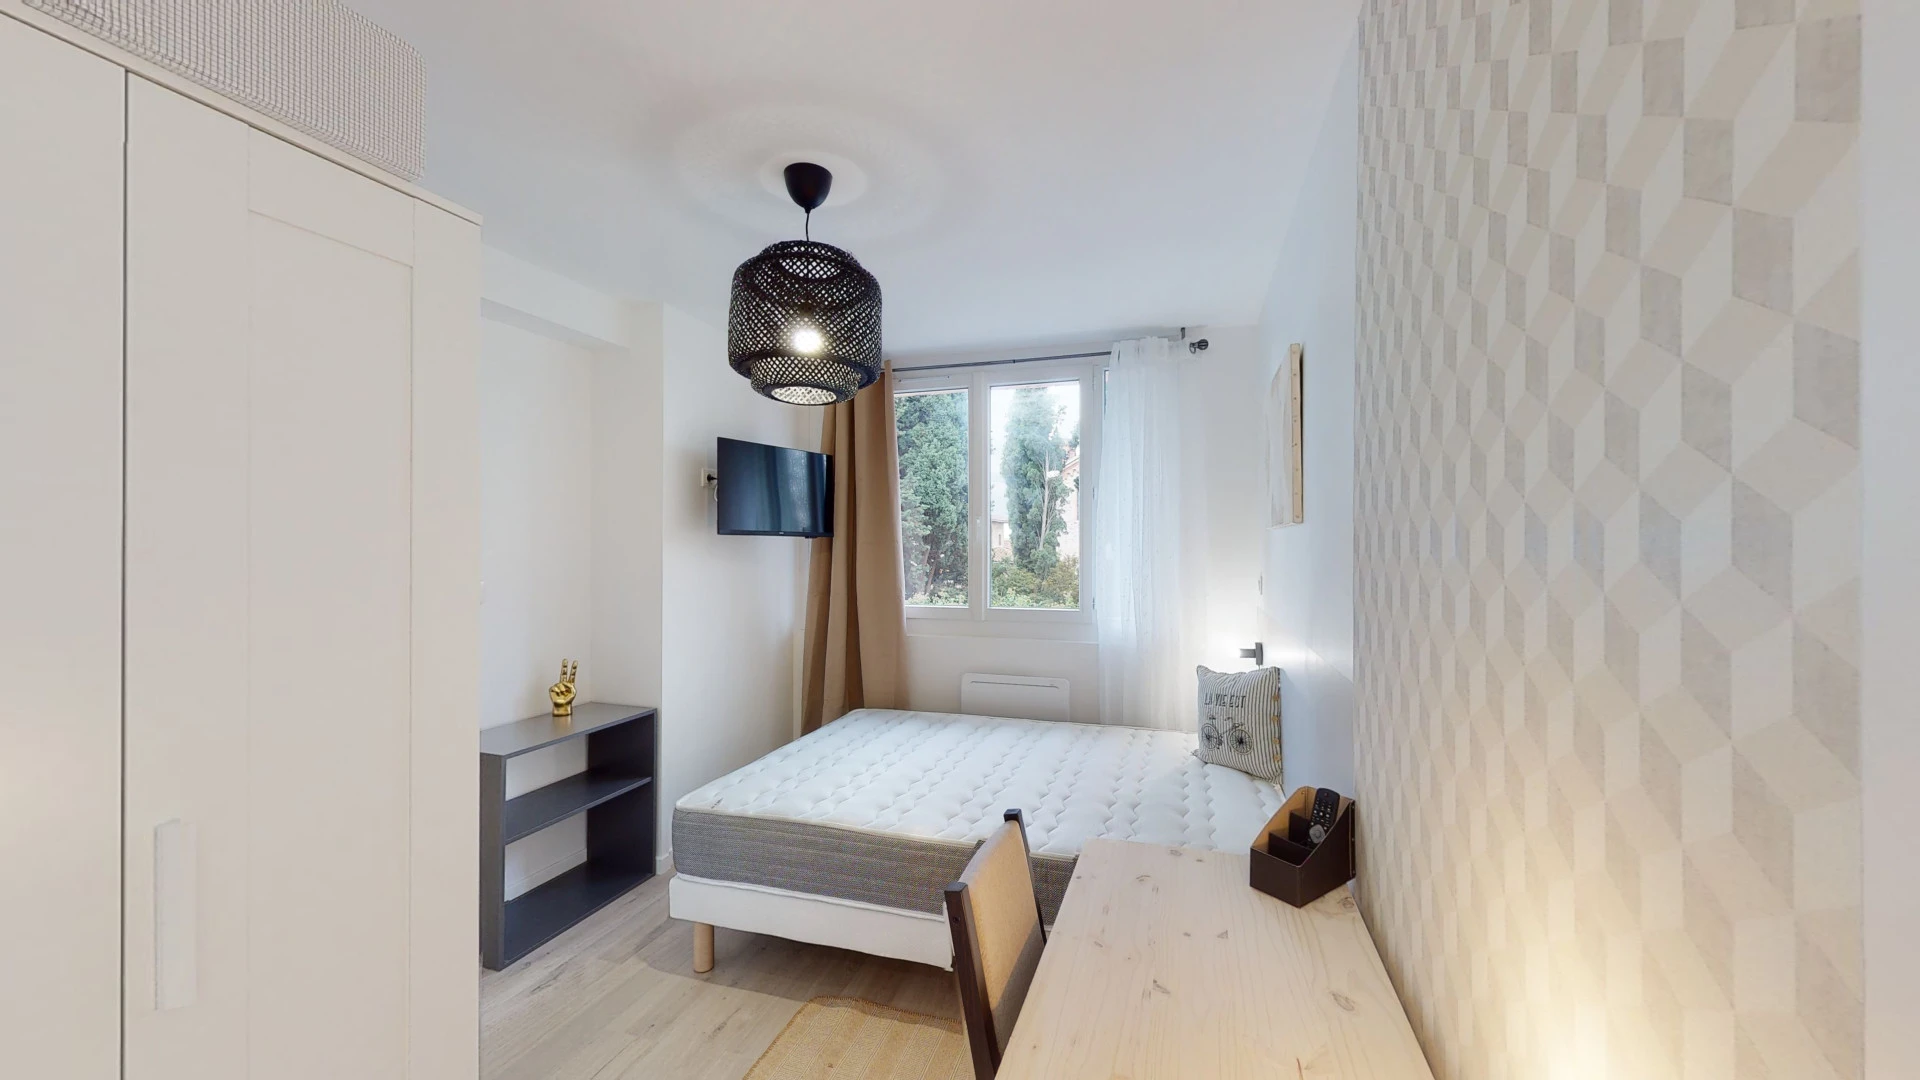 Habitación privada barata en Toulouse